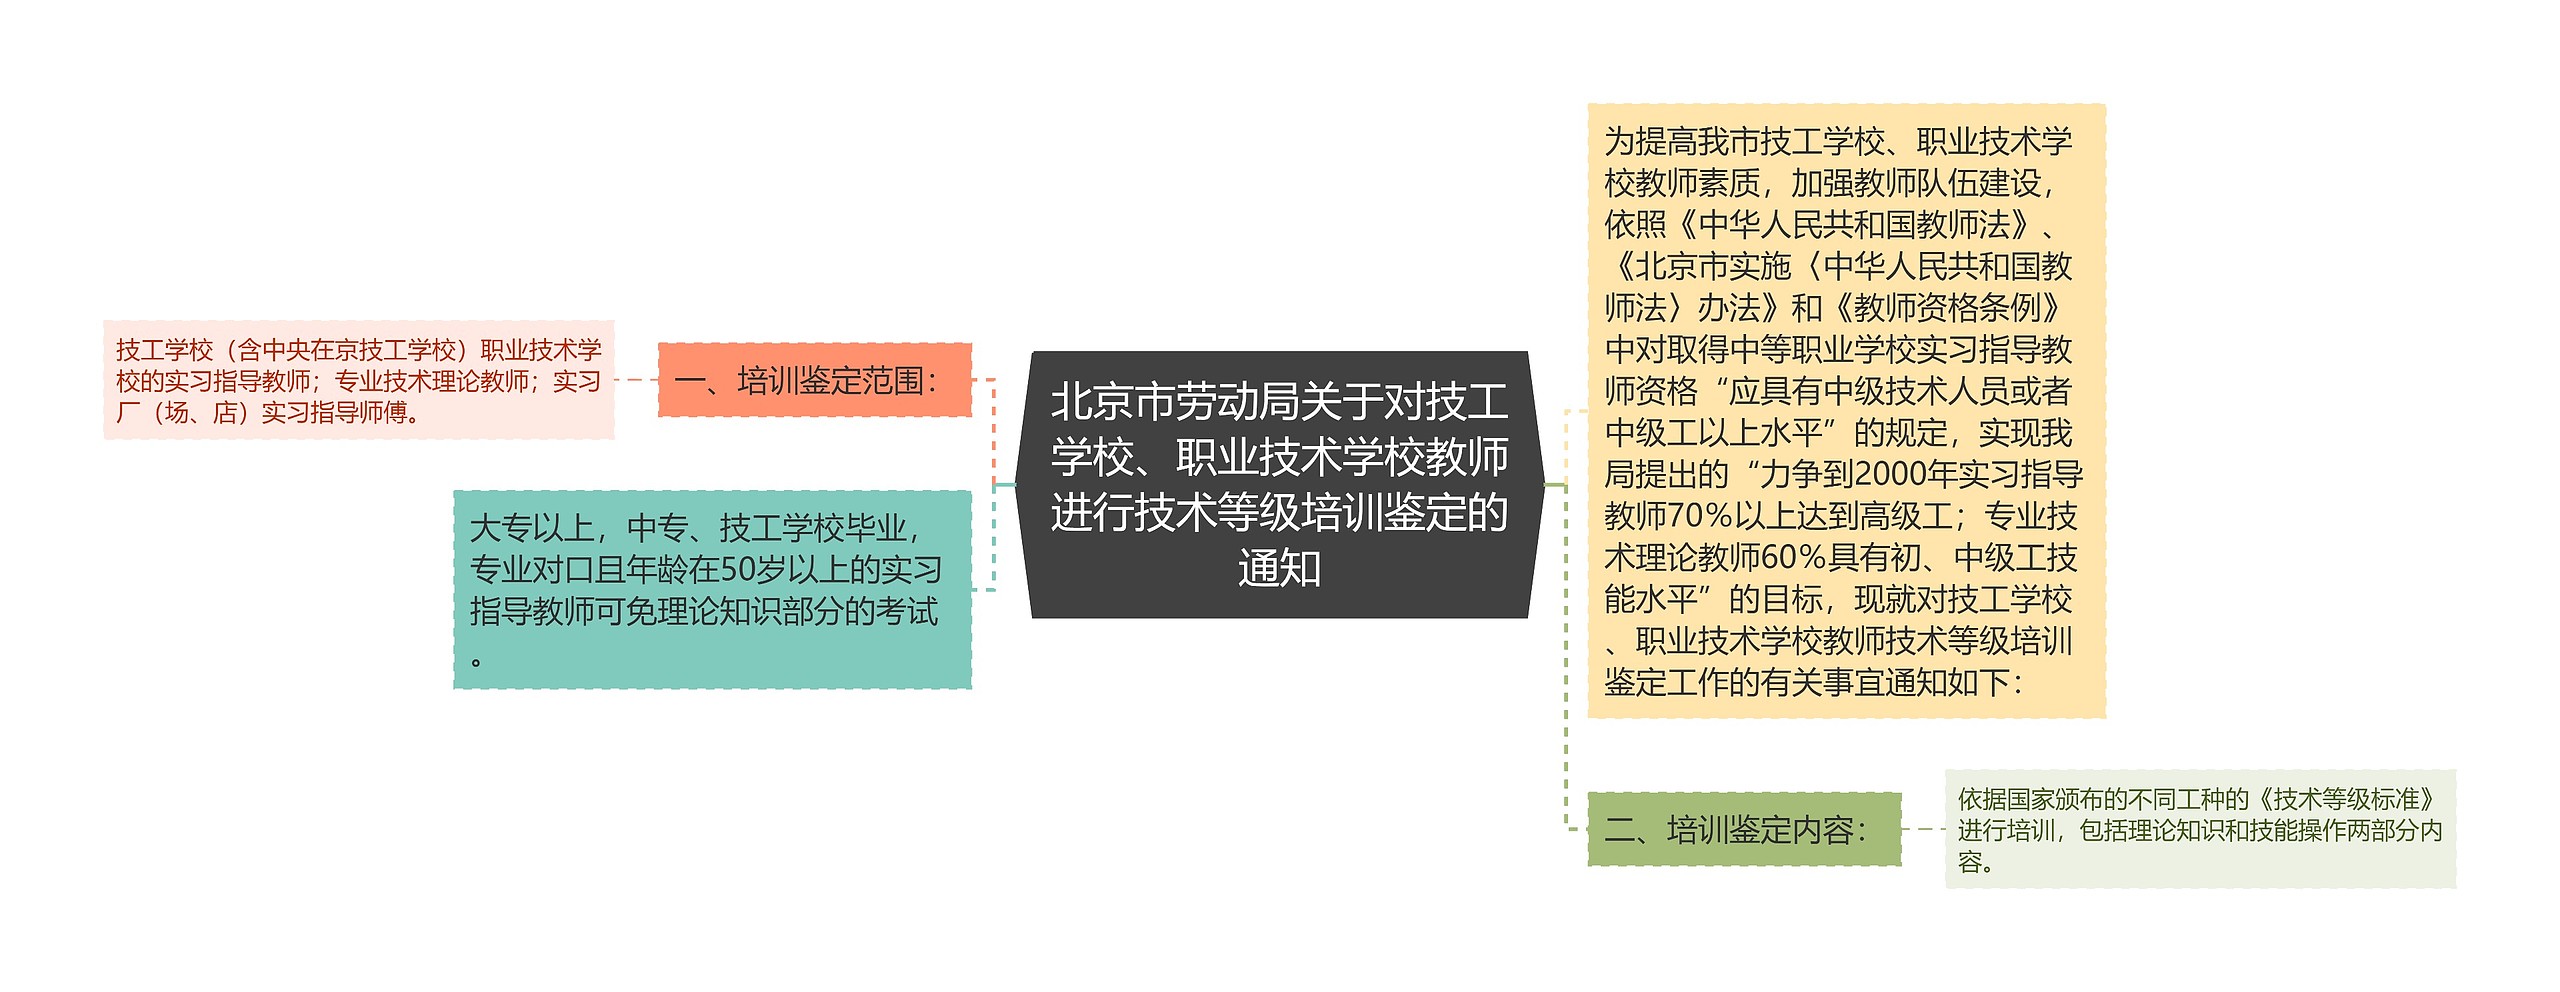 北京市劳动局关于对技工学校、职业技术学校教师进行技术等级培训鉴定的通知思维导图